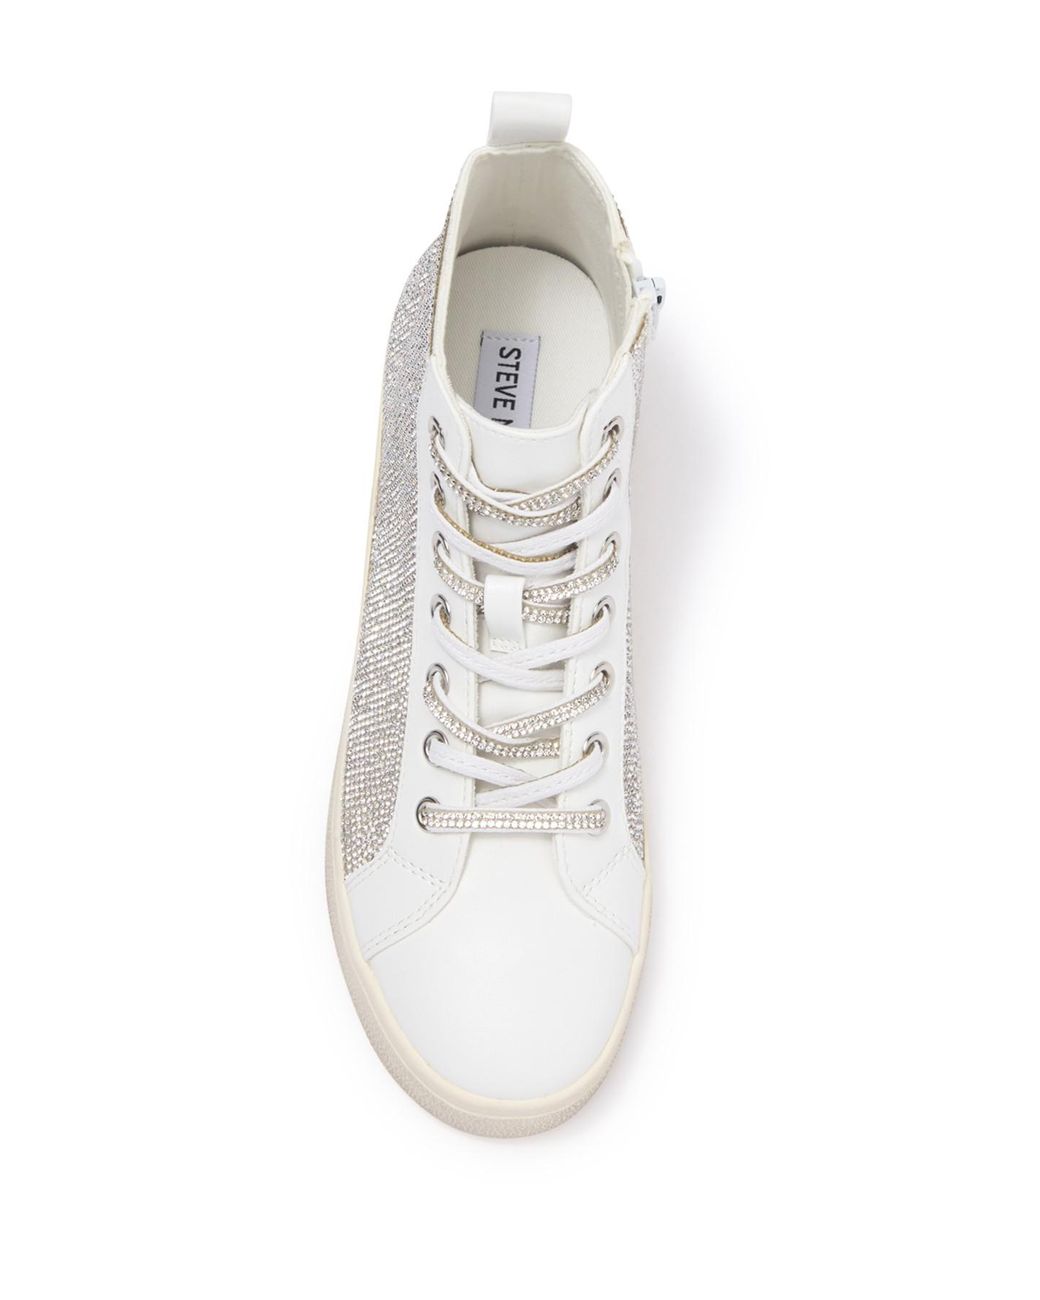 Steve Madden Bondi High Top Sneaker in White | Lyst